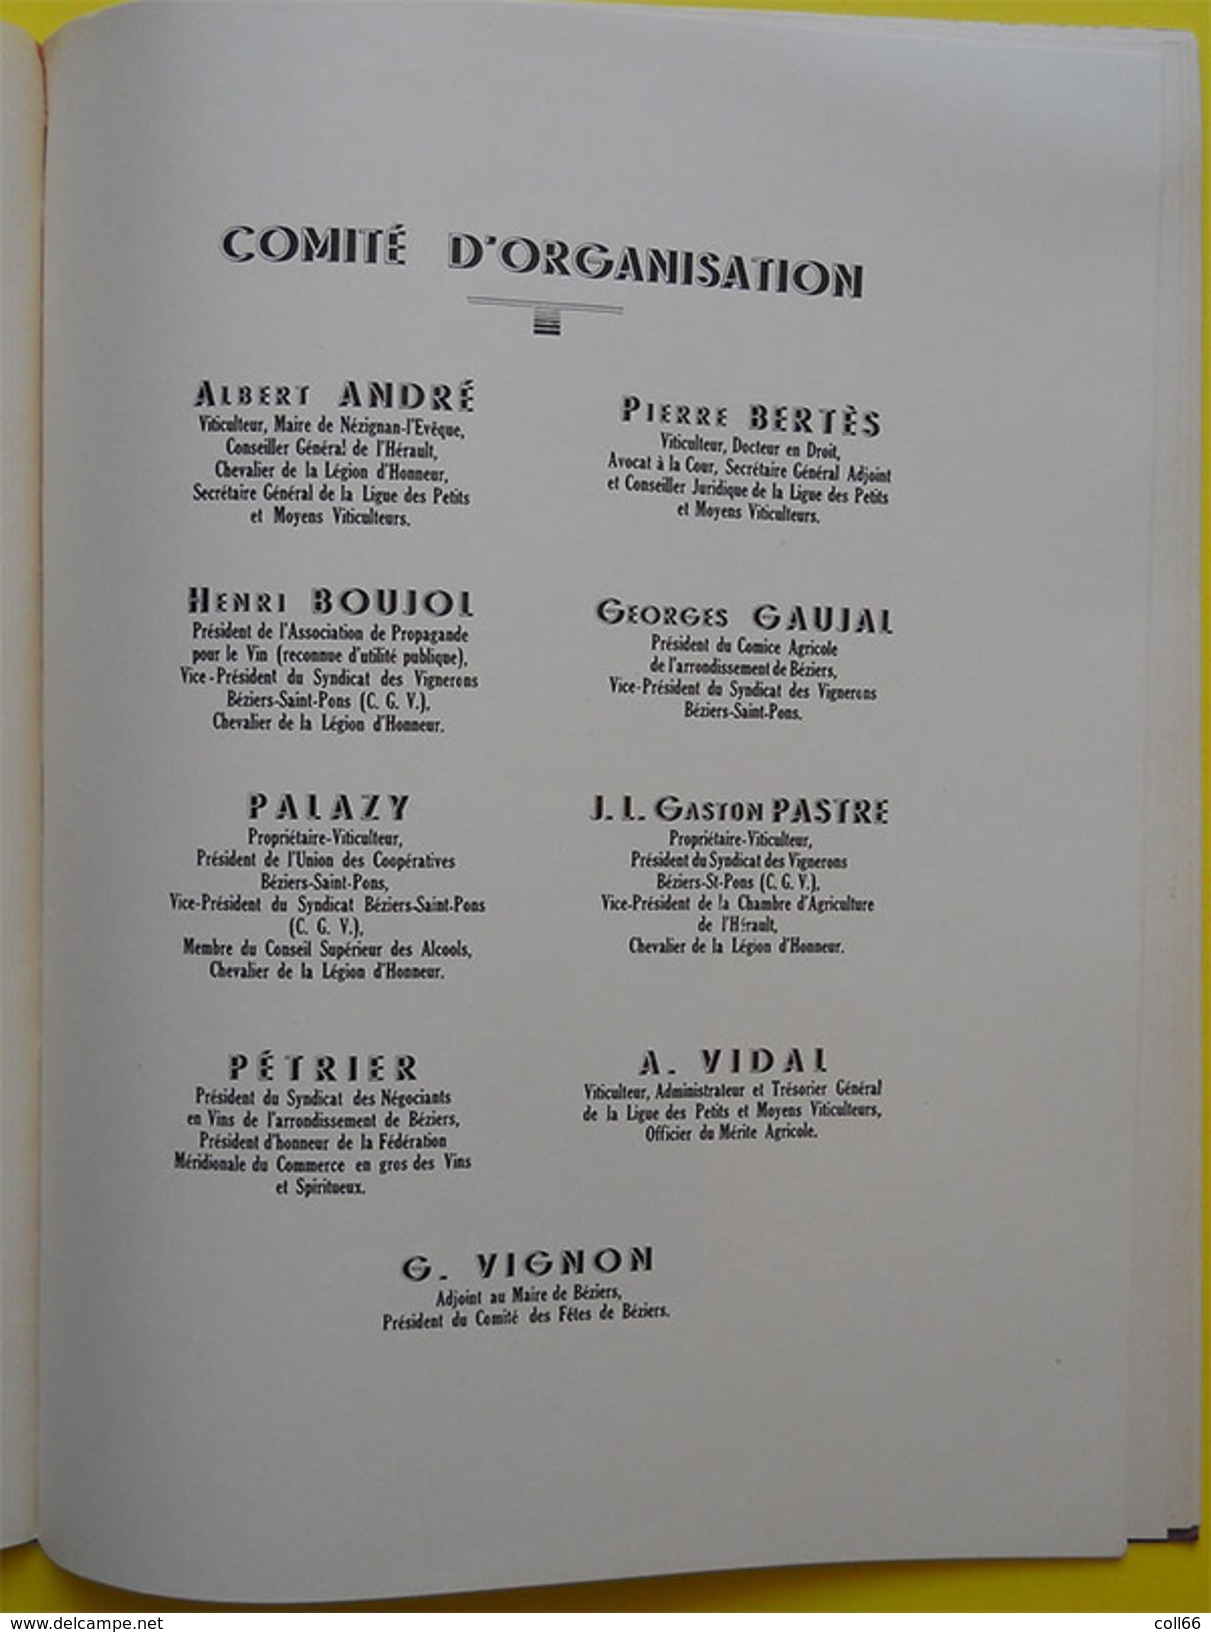 34 Béziers 1937 Livre d'Or d'Edouard Barthe dit Député du Vin au secours des vignerons clichés de Pialles et Comité